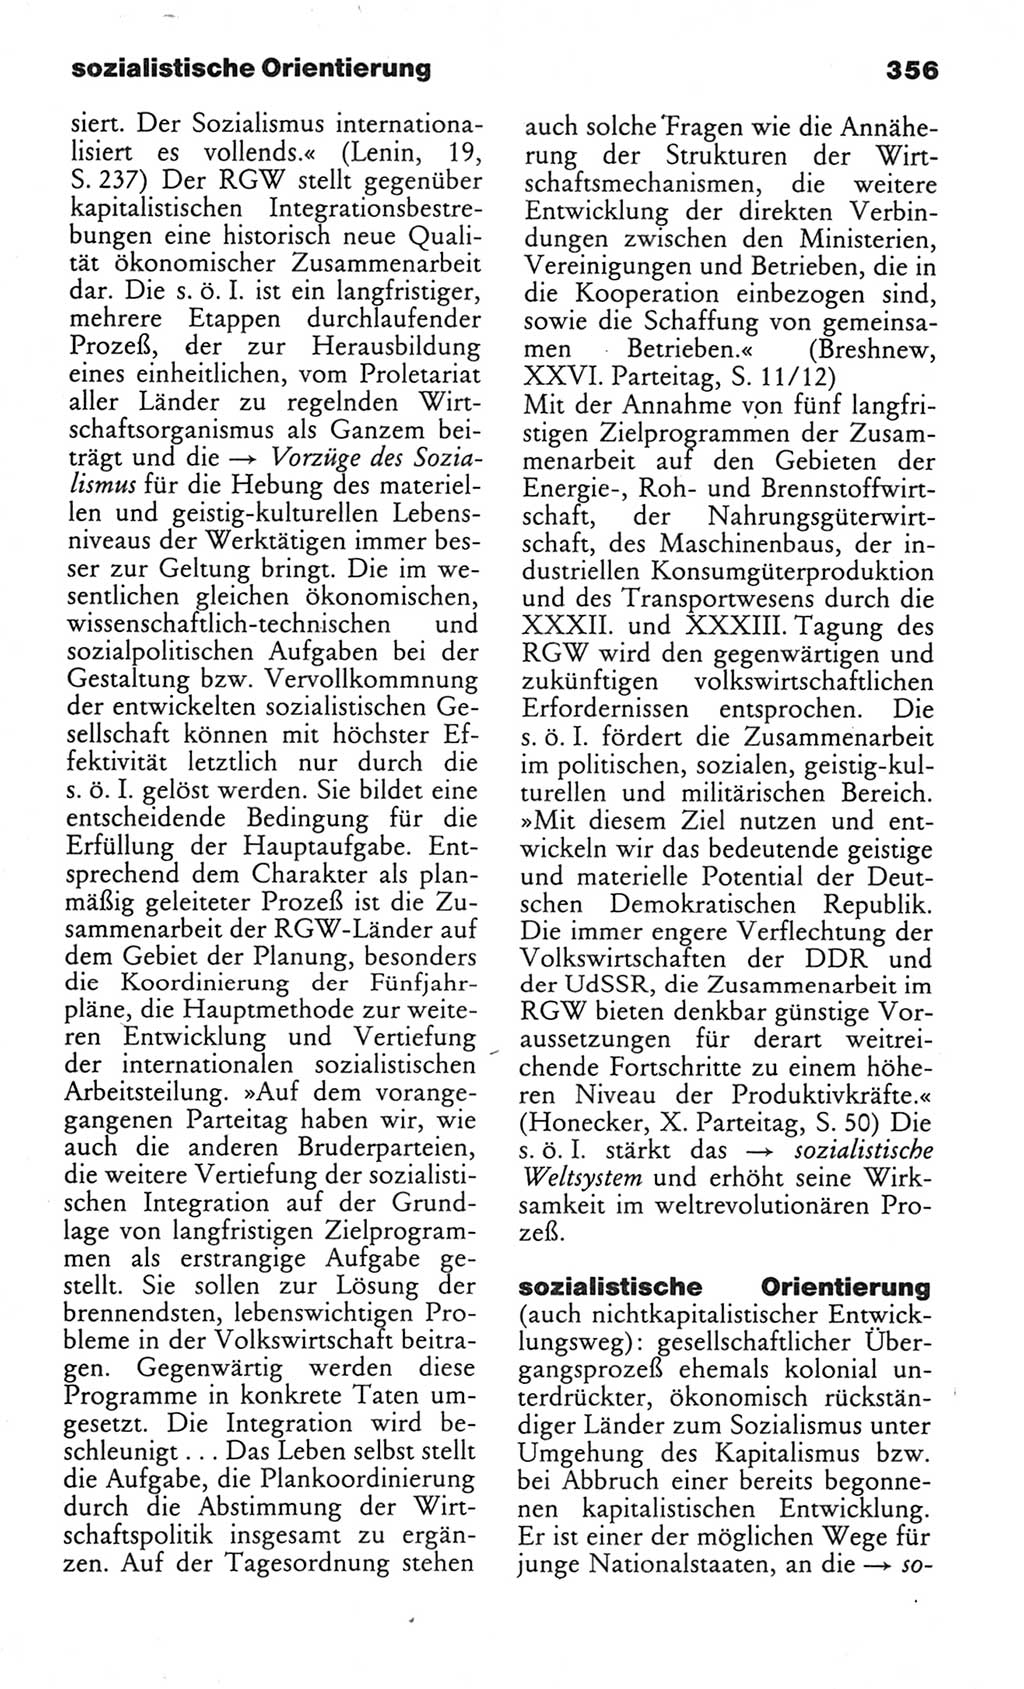 Wörterbuch des wissenschaftlichen Kommunismus [Deutsche Demokratische Republik (DDR)] 1982, Seite 356 (Wb. wiss. Komm. DDR 1982, S. 356)